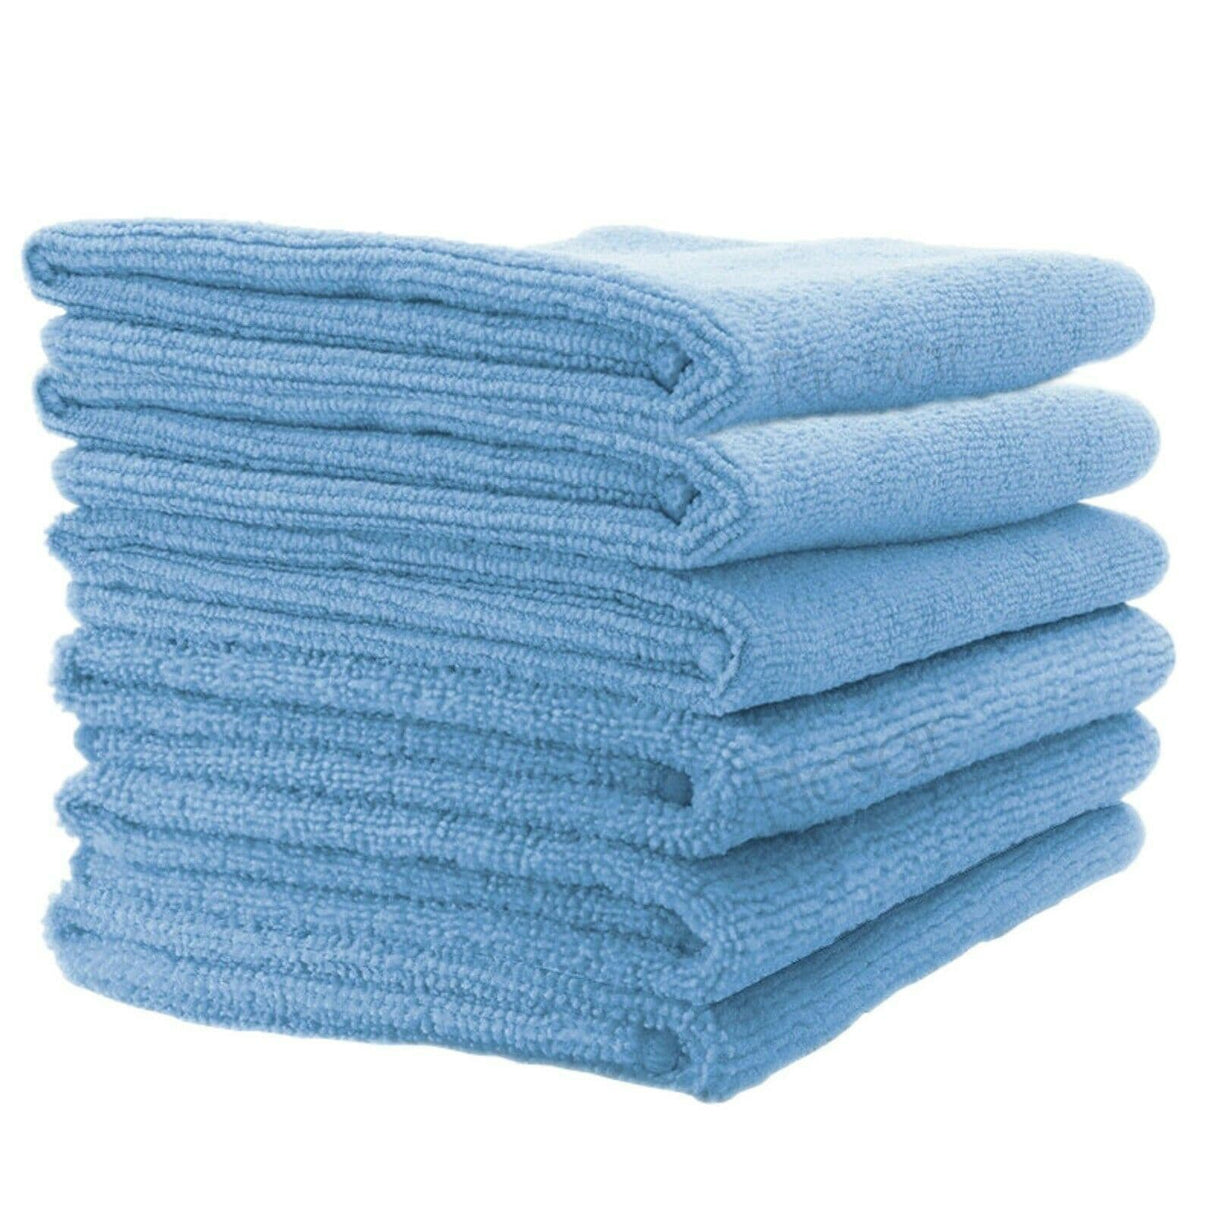 Microfibre Cloths - Blue (Choose Bundle Size)